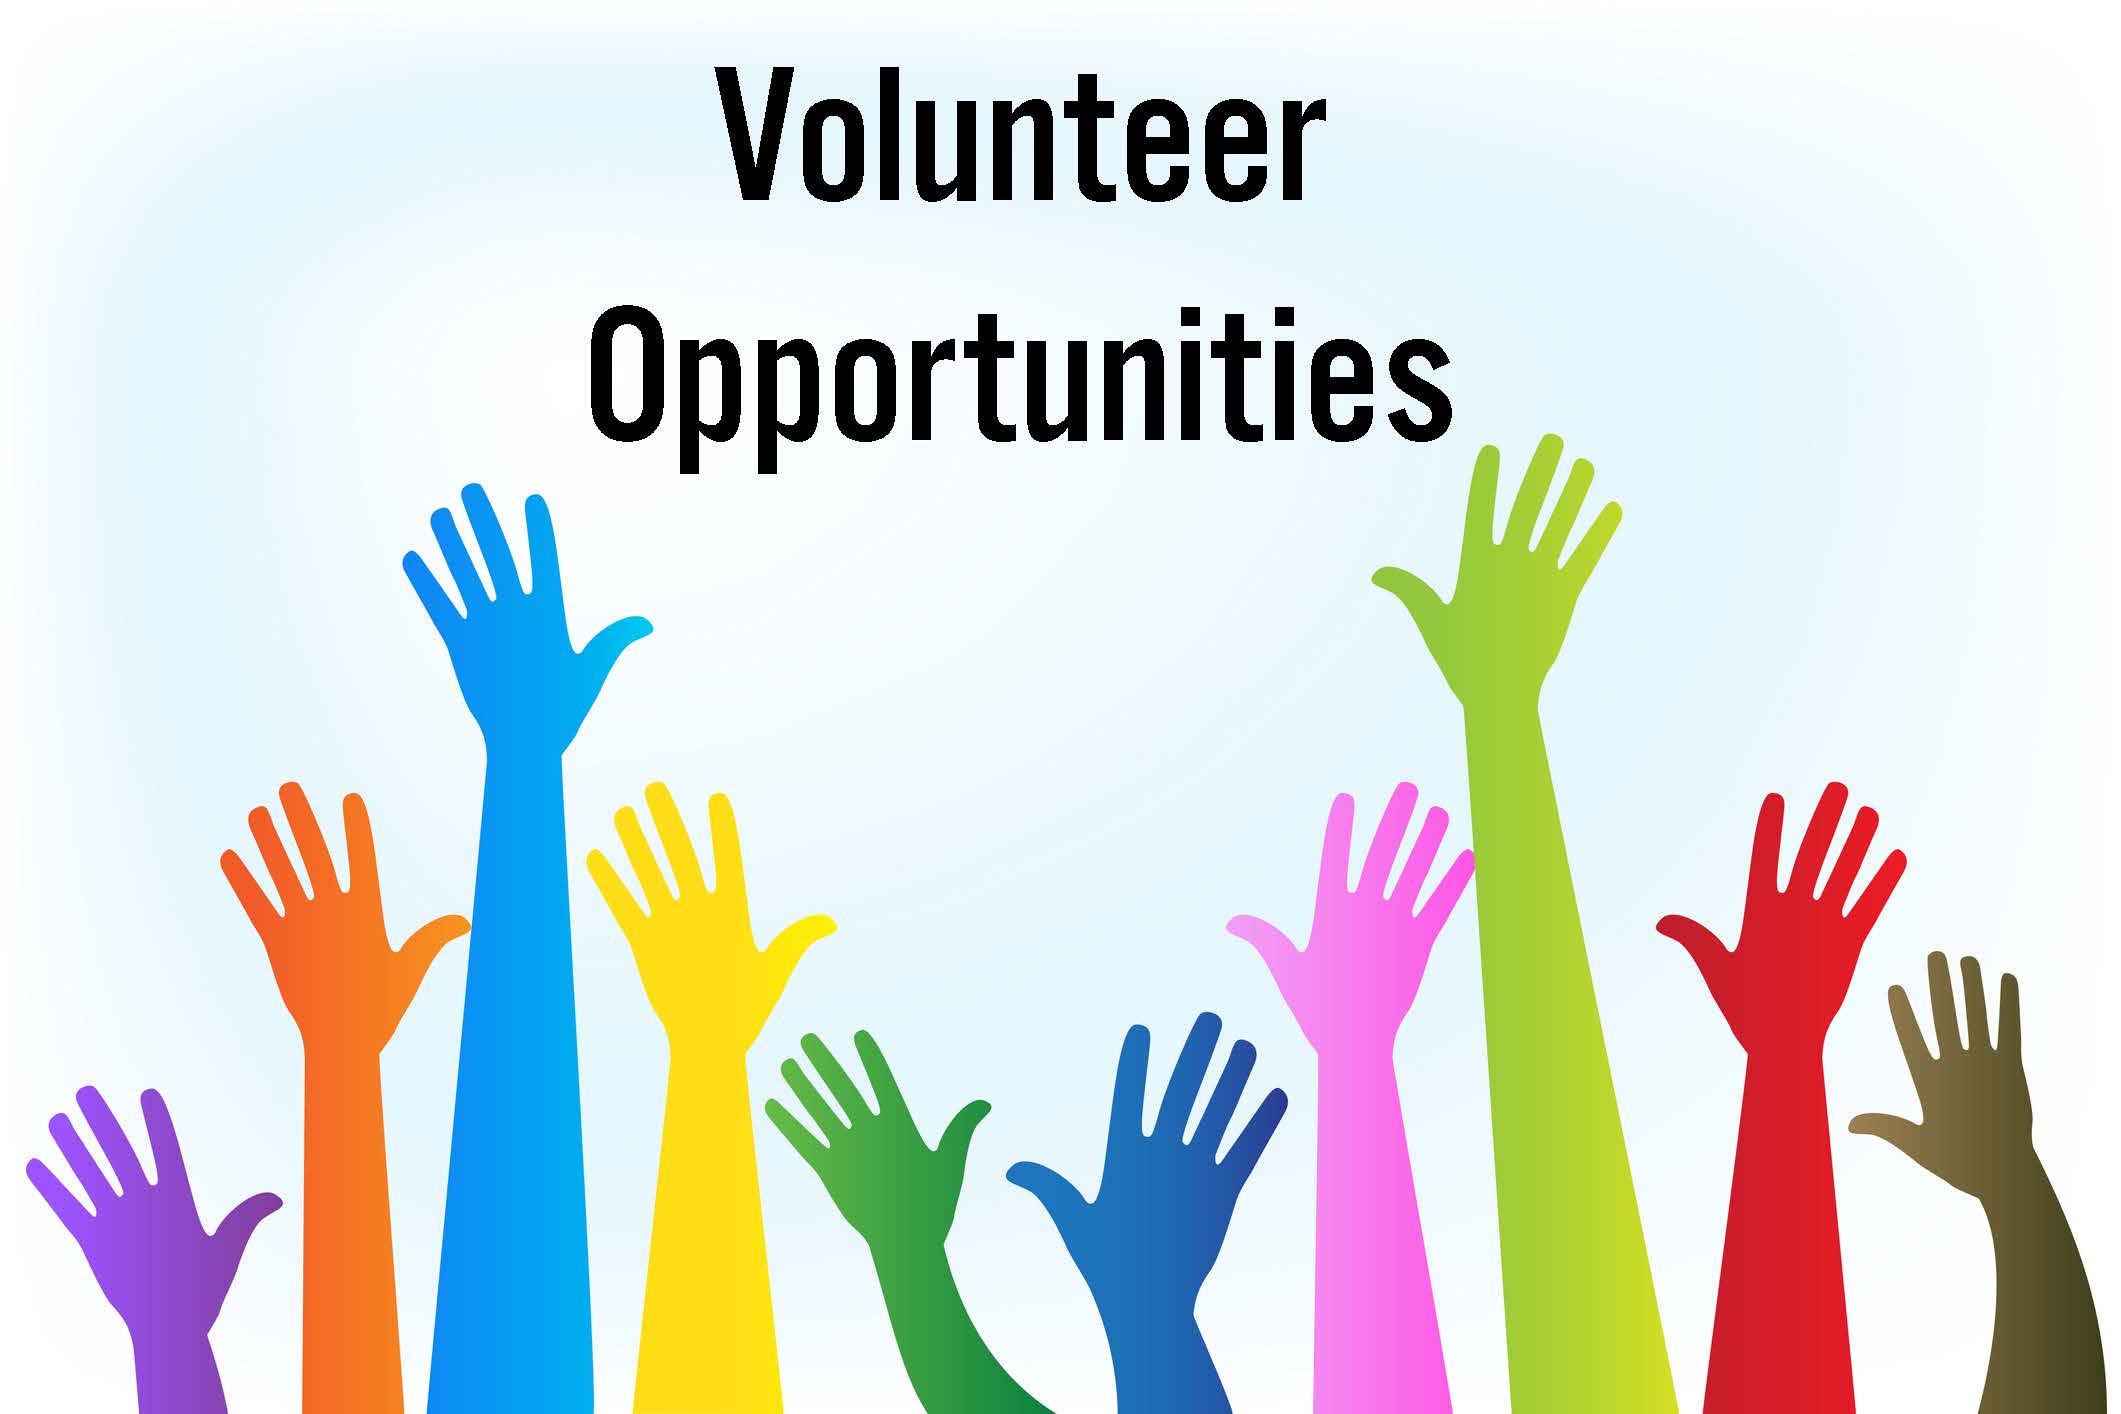 Volunteer opportunities